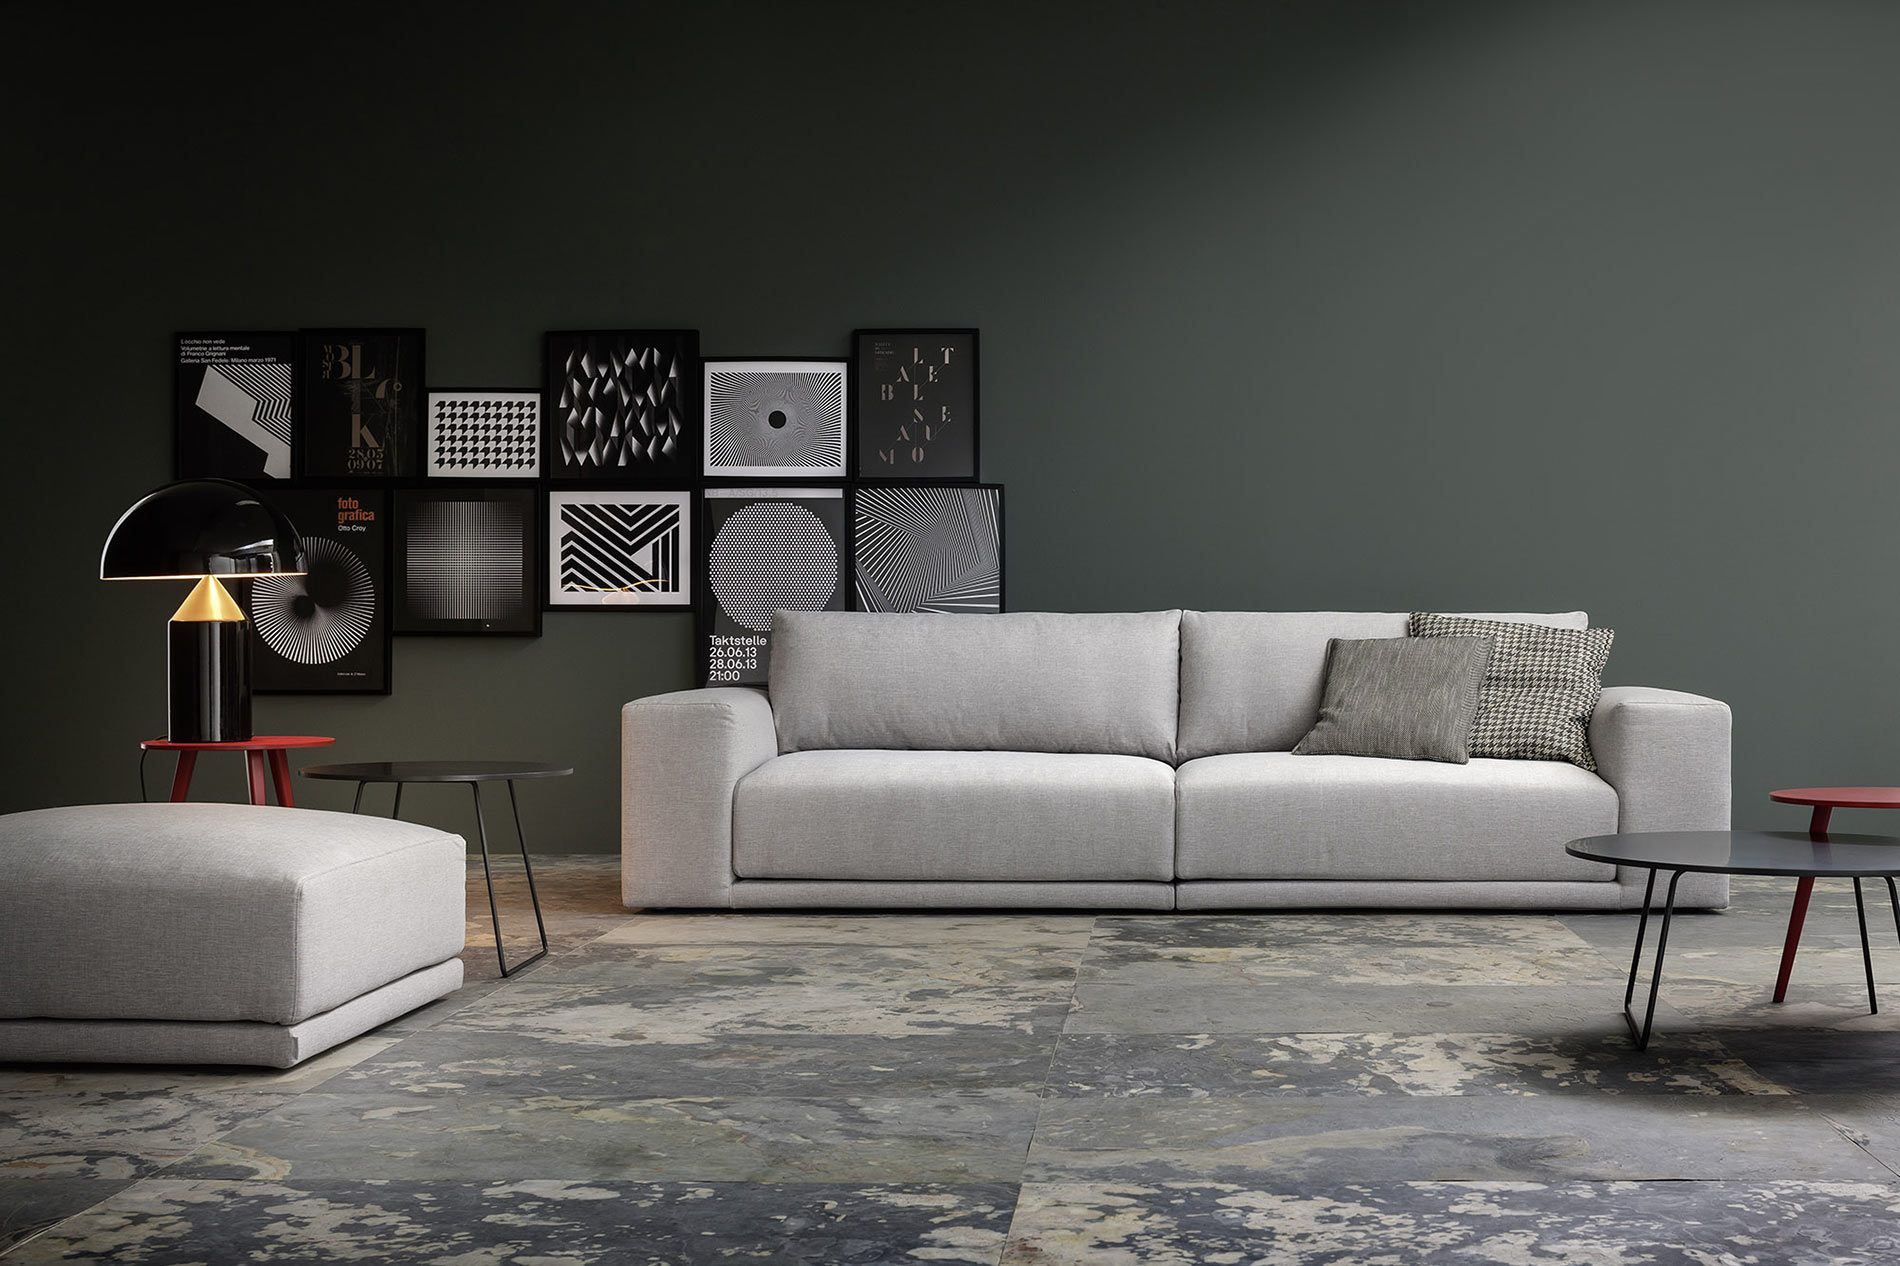 grosses breites lounge design sofa